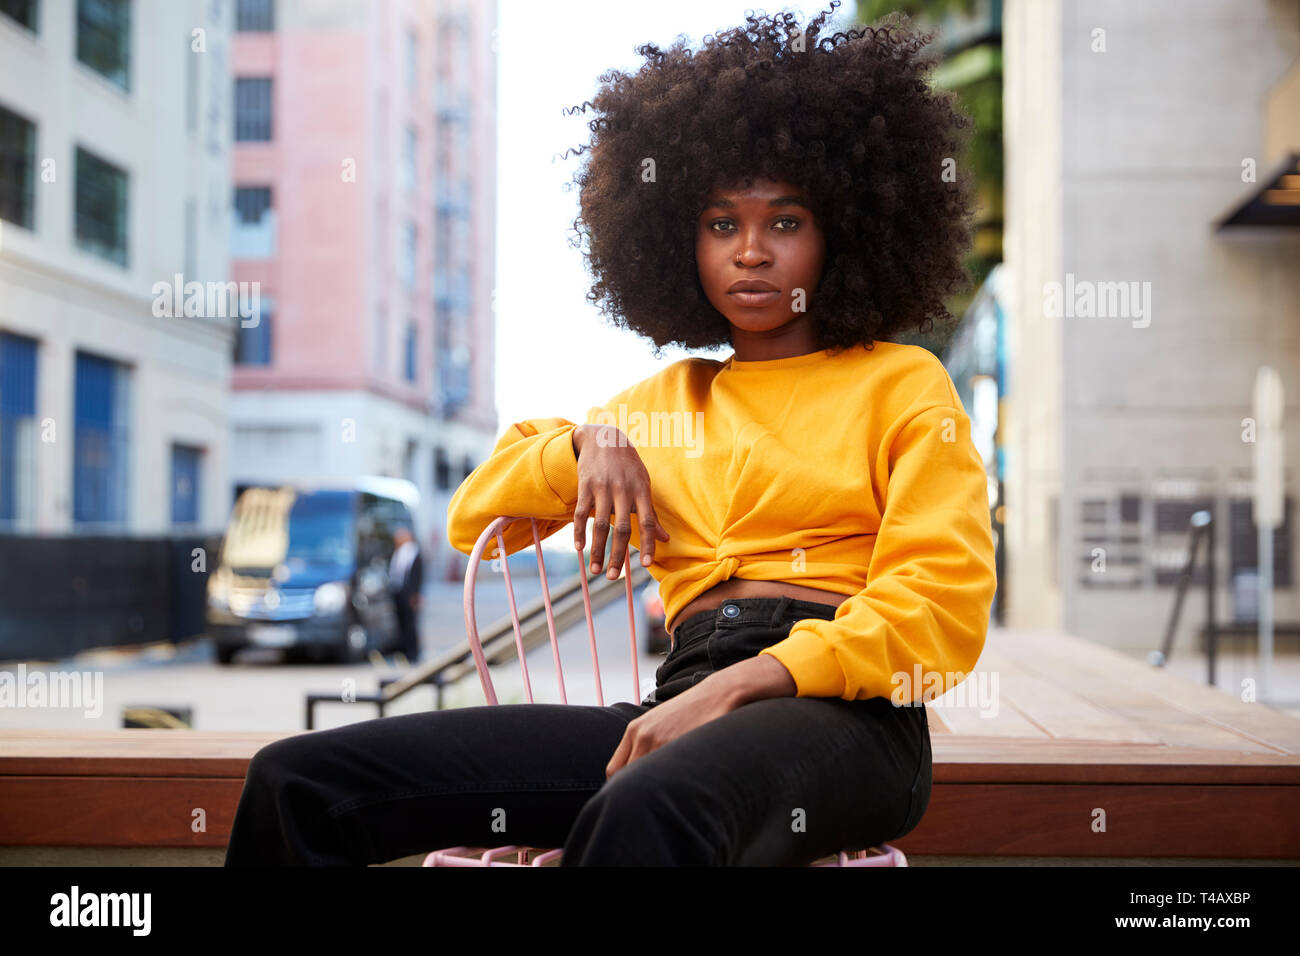 Junge schwarze Frau mit afro Haar und gelb Top sitzt auf einem Stuhl in der Straße an der Kamera auf der Suche Stockfoto